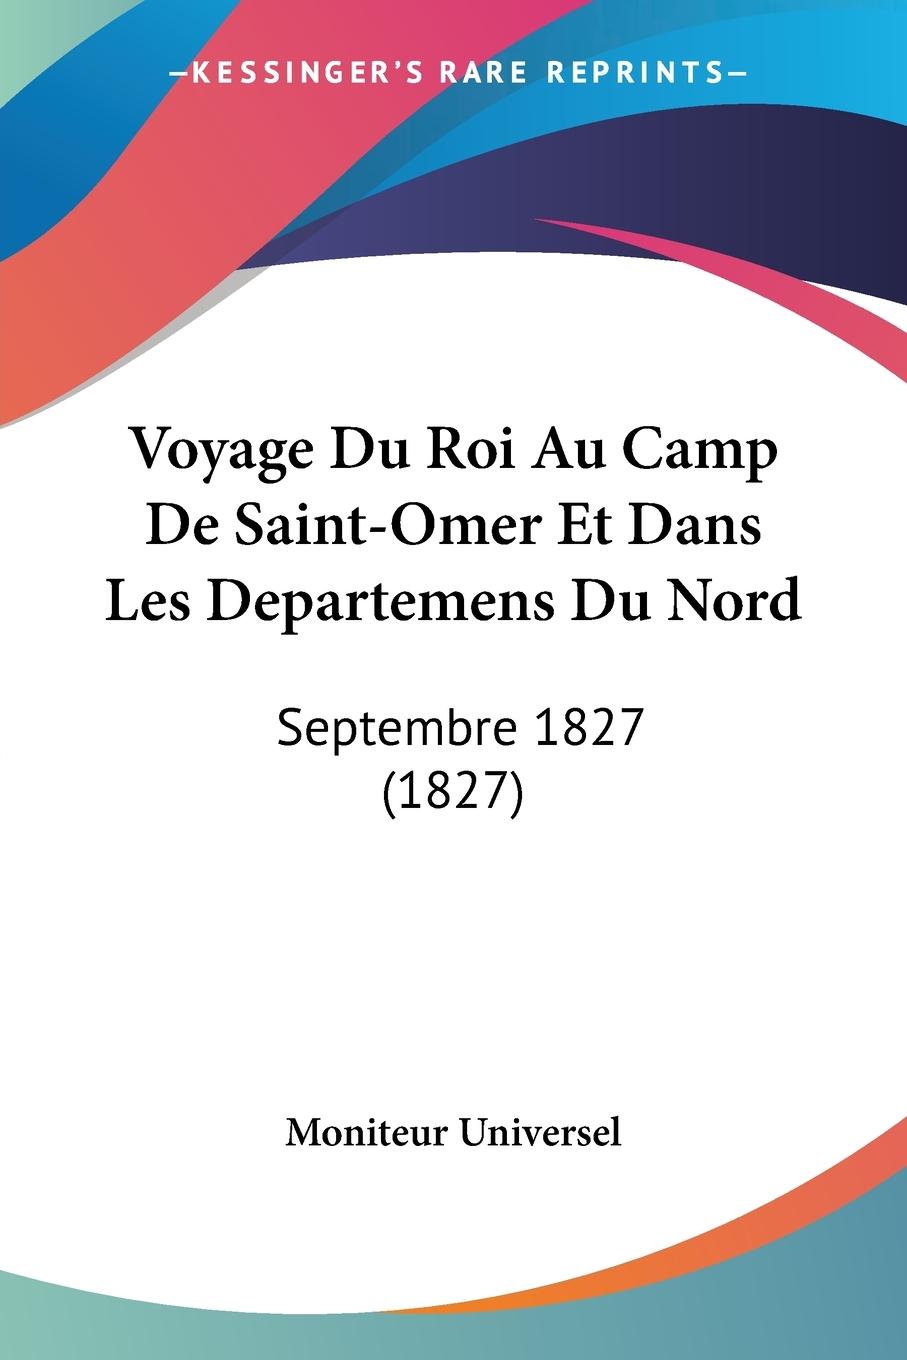 Voyage Du Roi Au Camp De Saint-Omer Et Dans Les Departemens Du Nord - Moniteur Universel